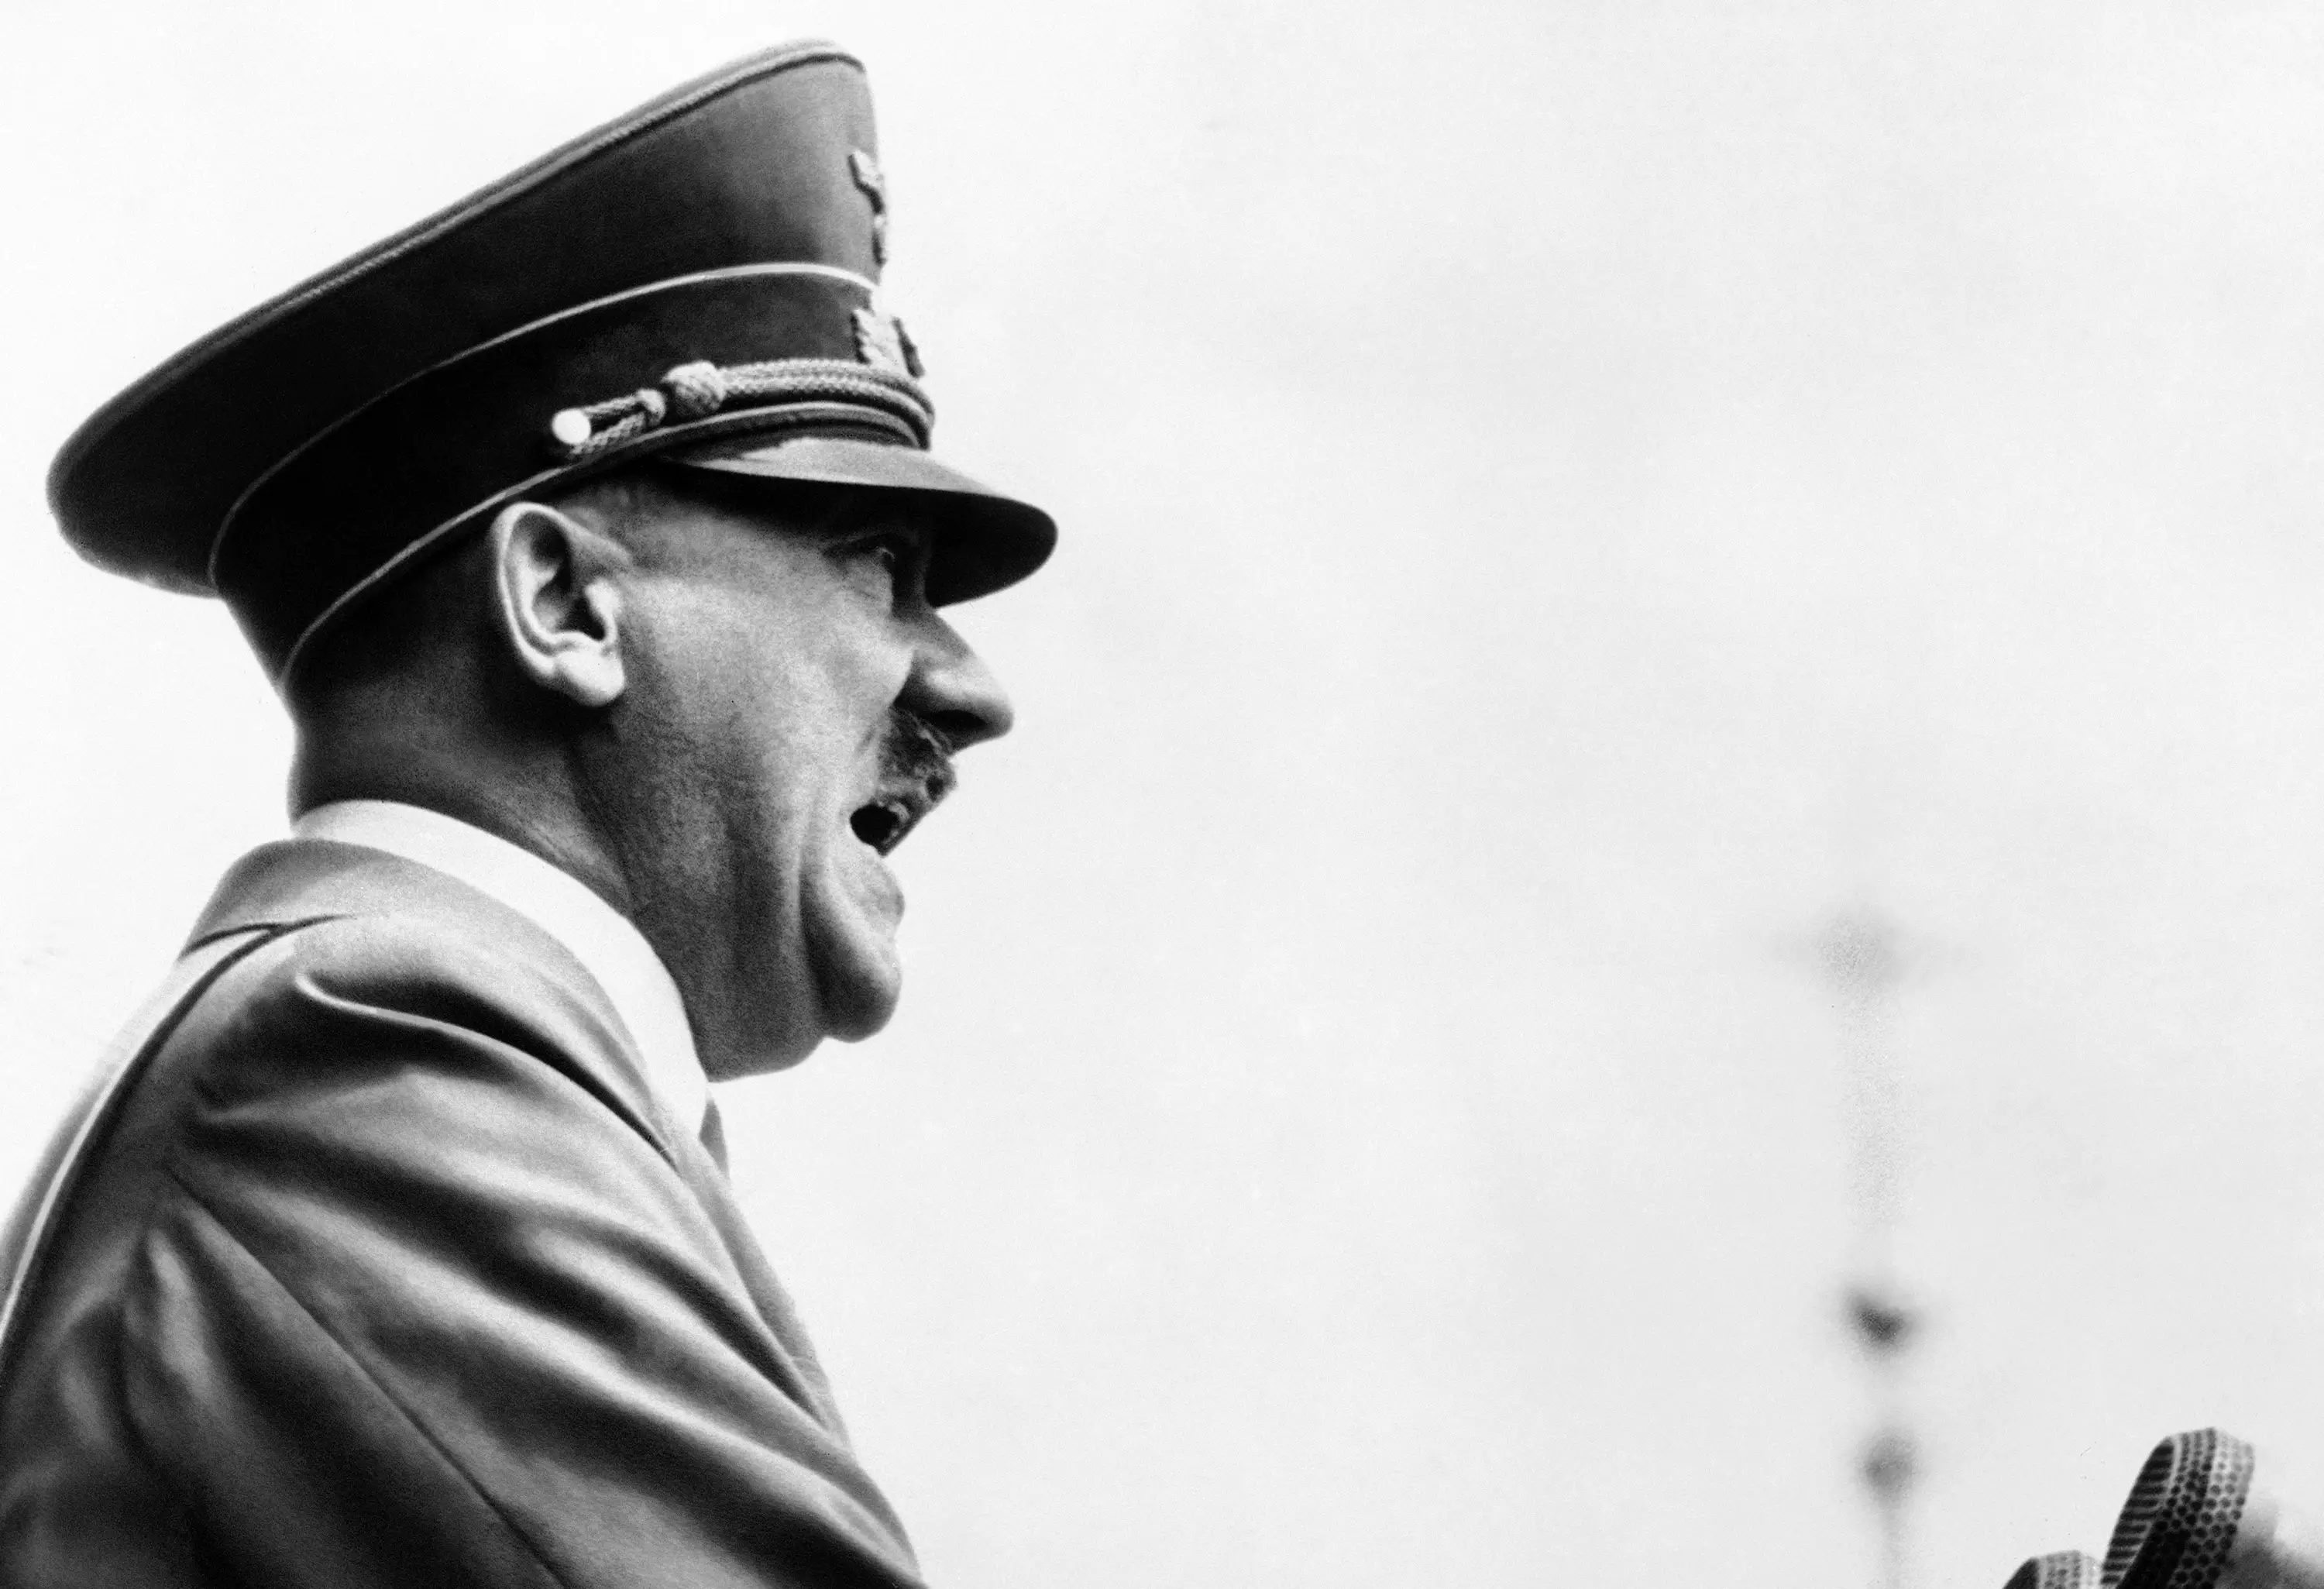 Adolf Hitler Was A Major Drug Addict Who Craved Uppers